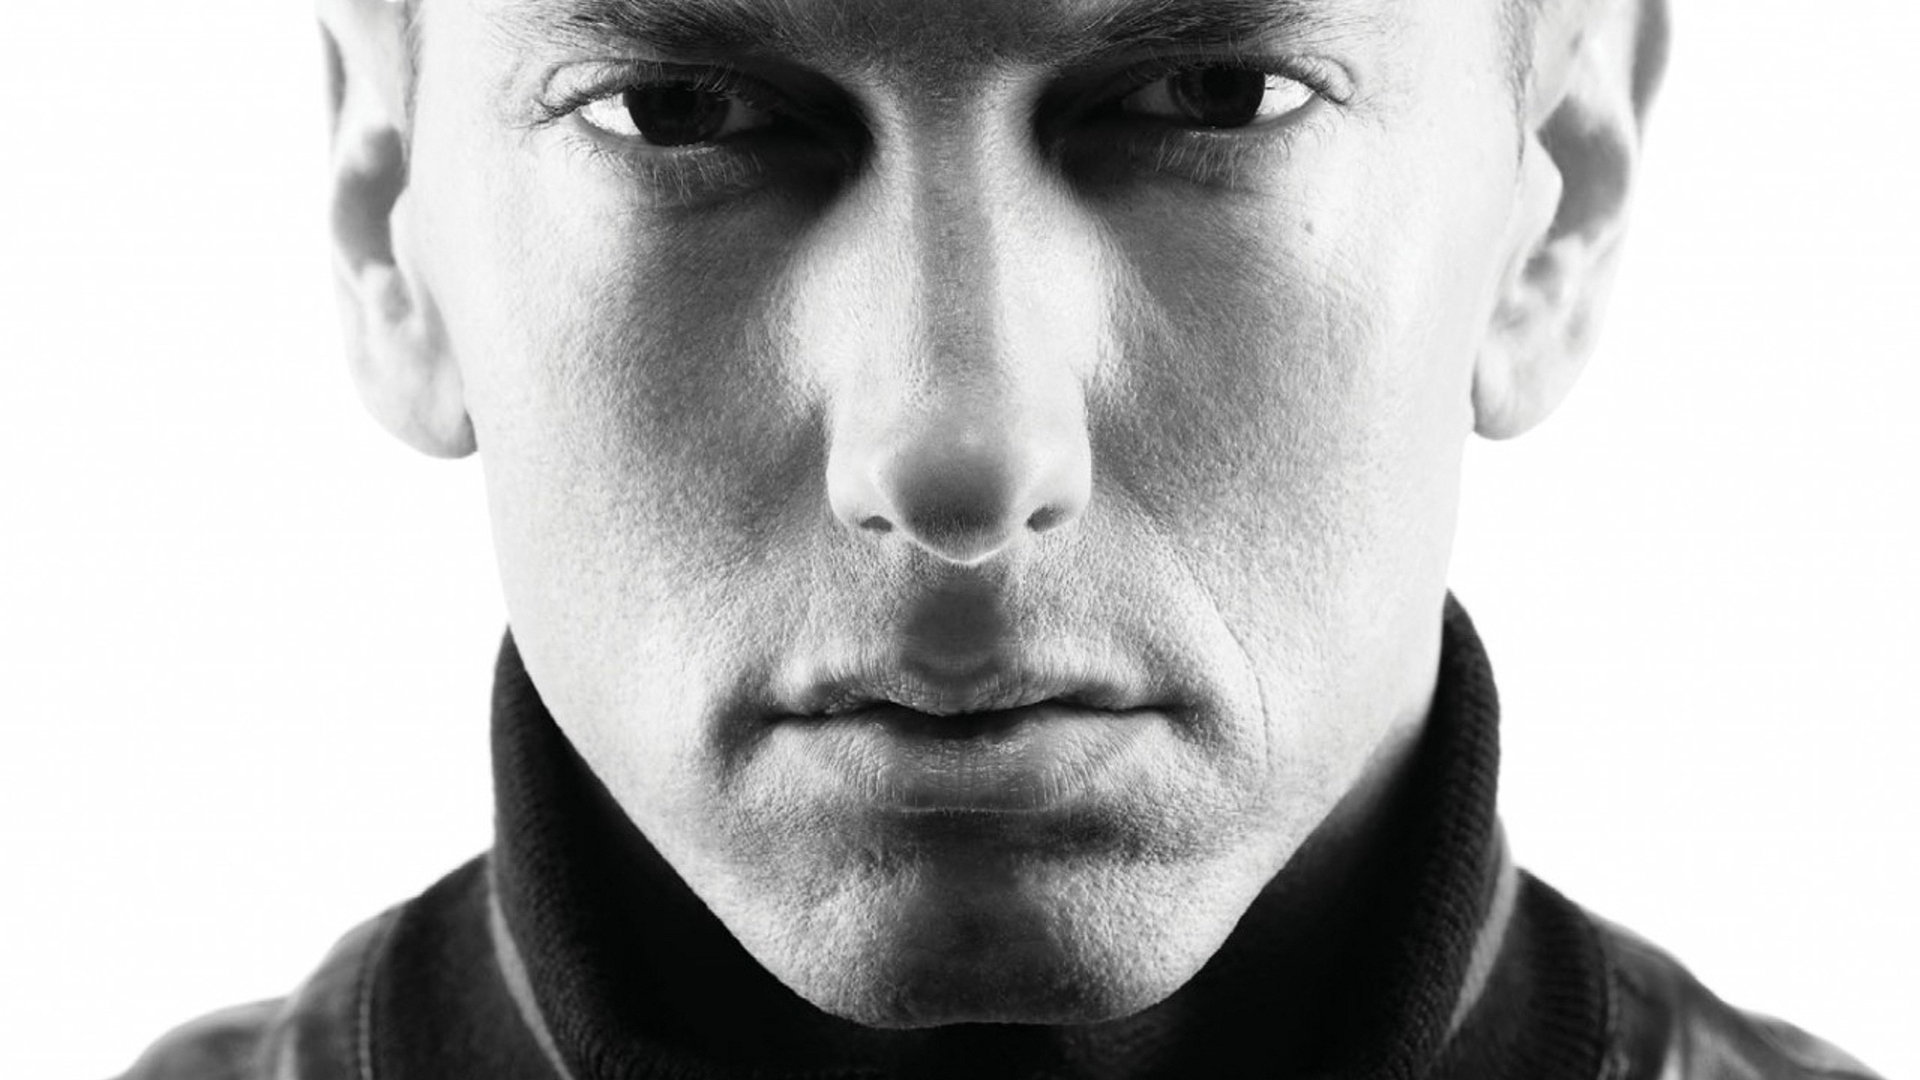 Download hd 1080p Eminem desktop background ID:452165 for free